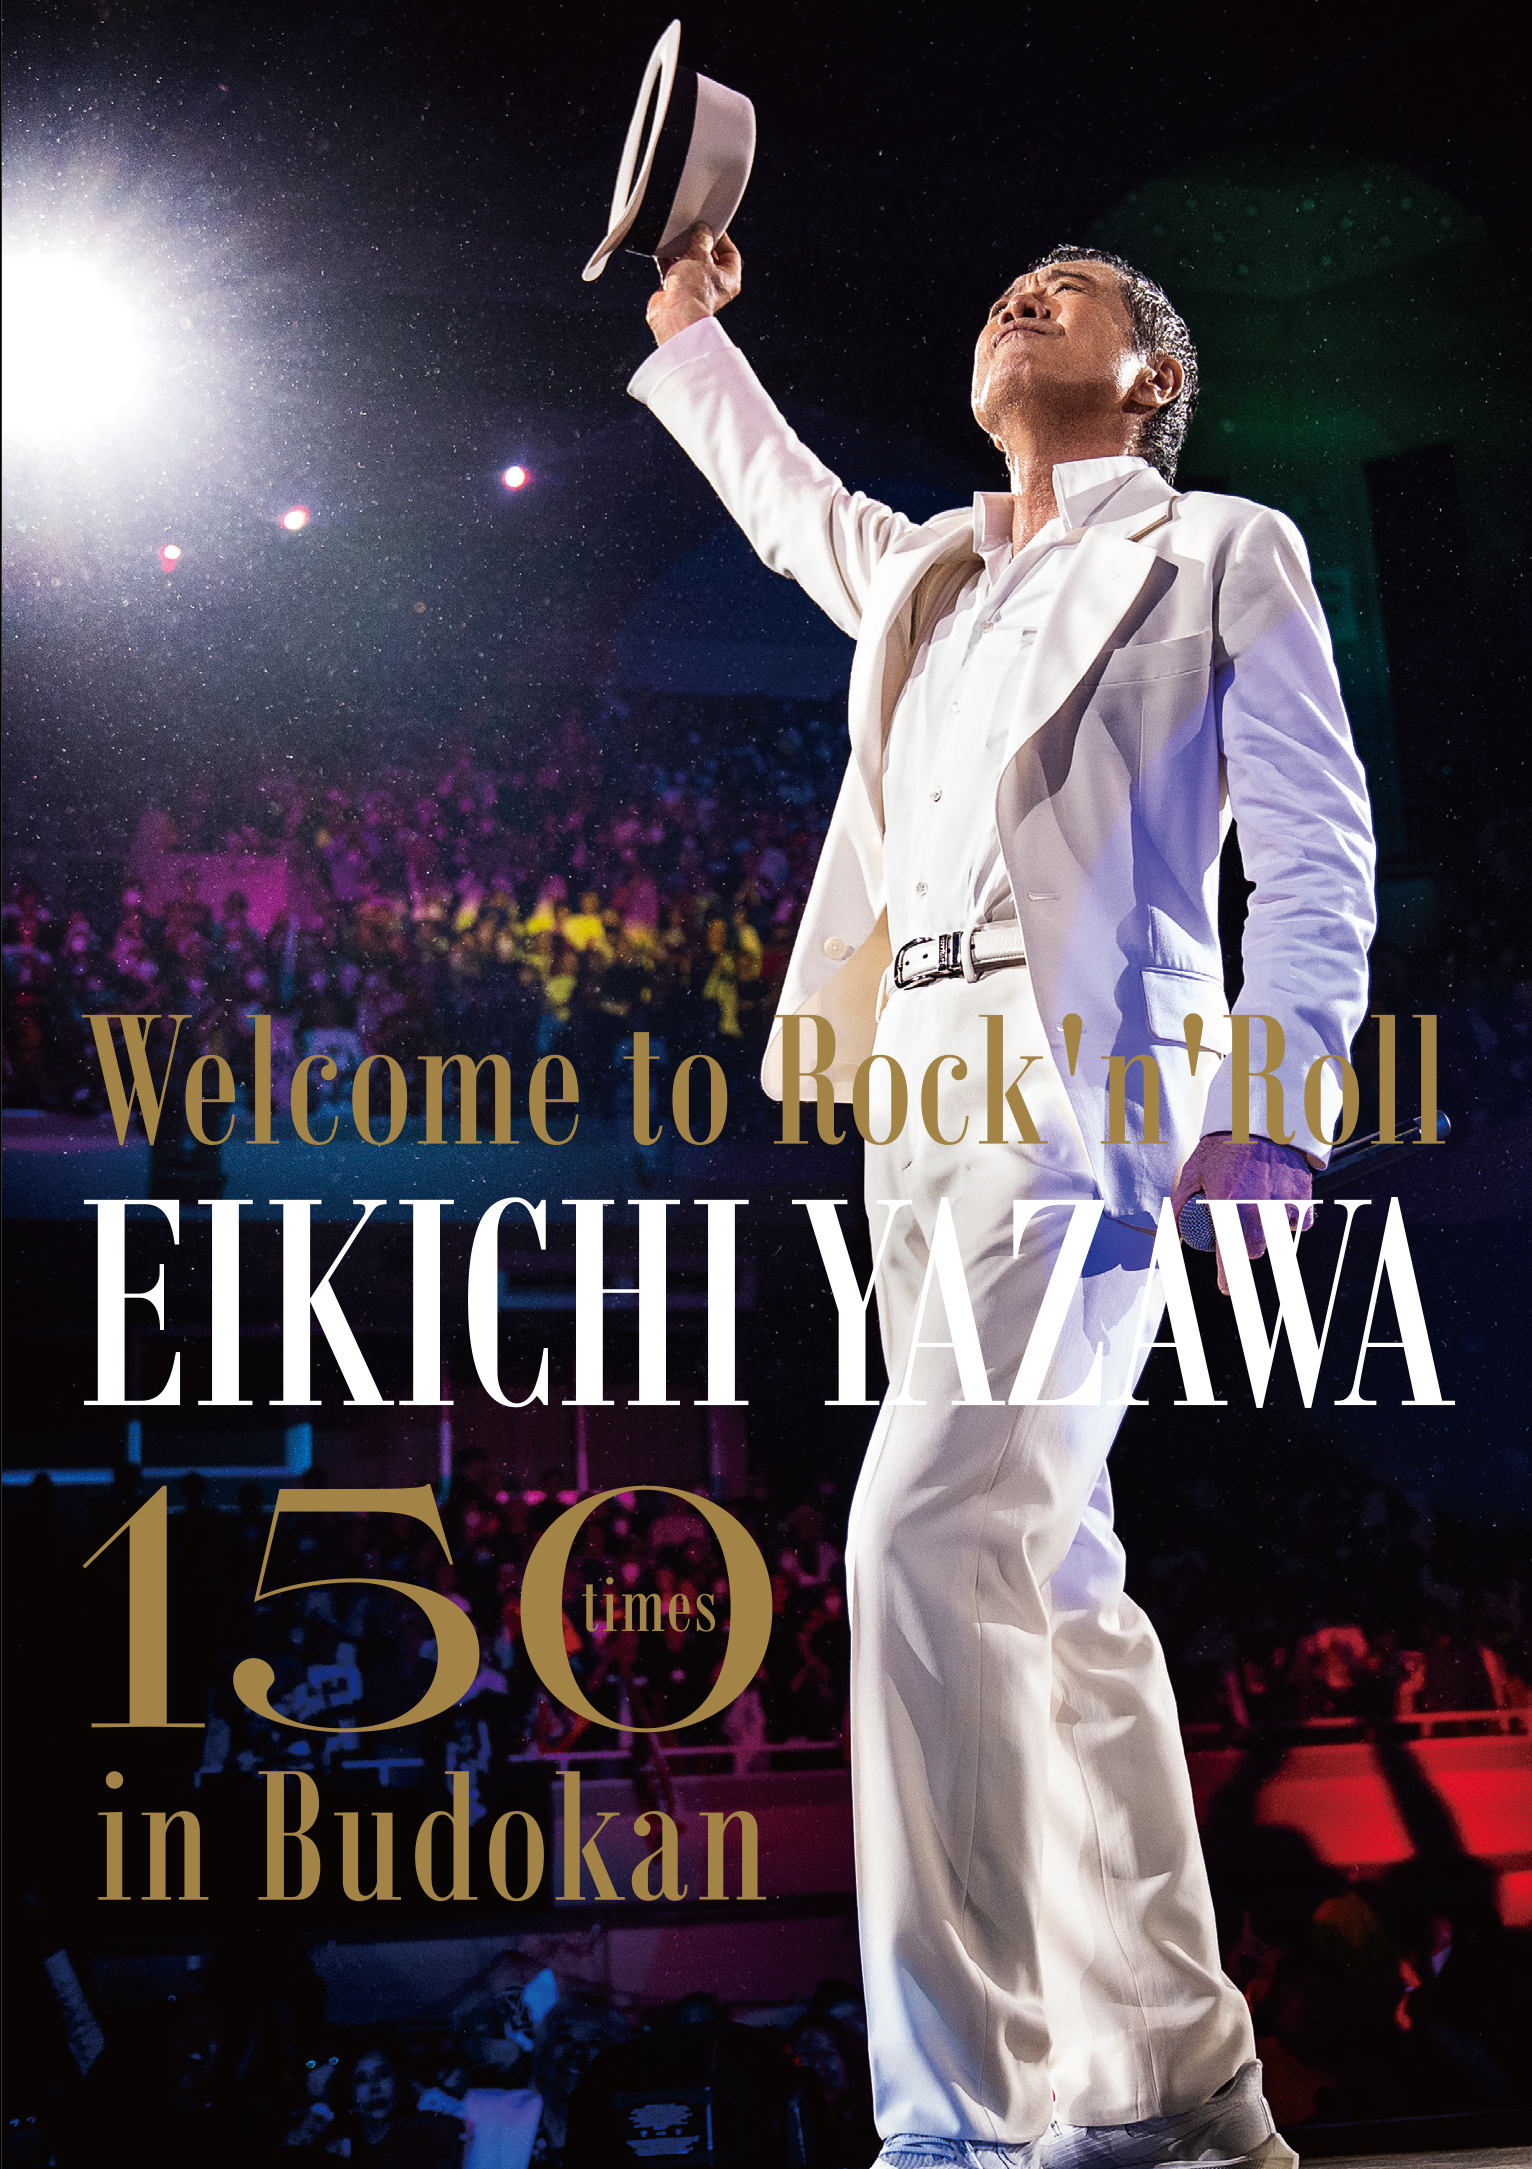 〜Welcome to Rock'n'Roll〜 EIKICHI YAZAWA 150times in Budokan